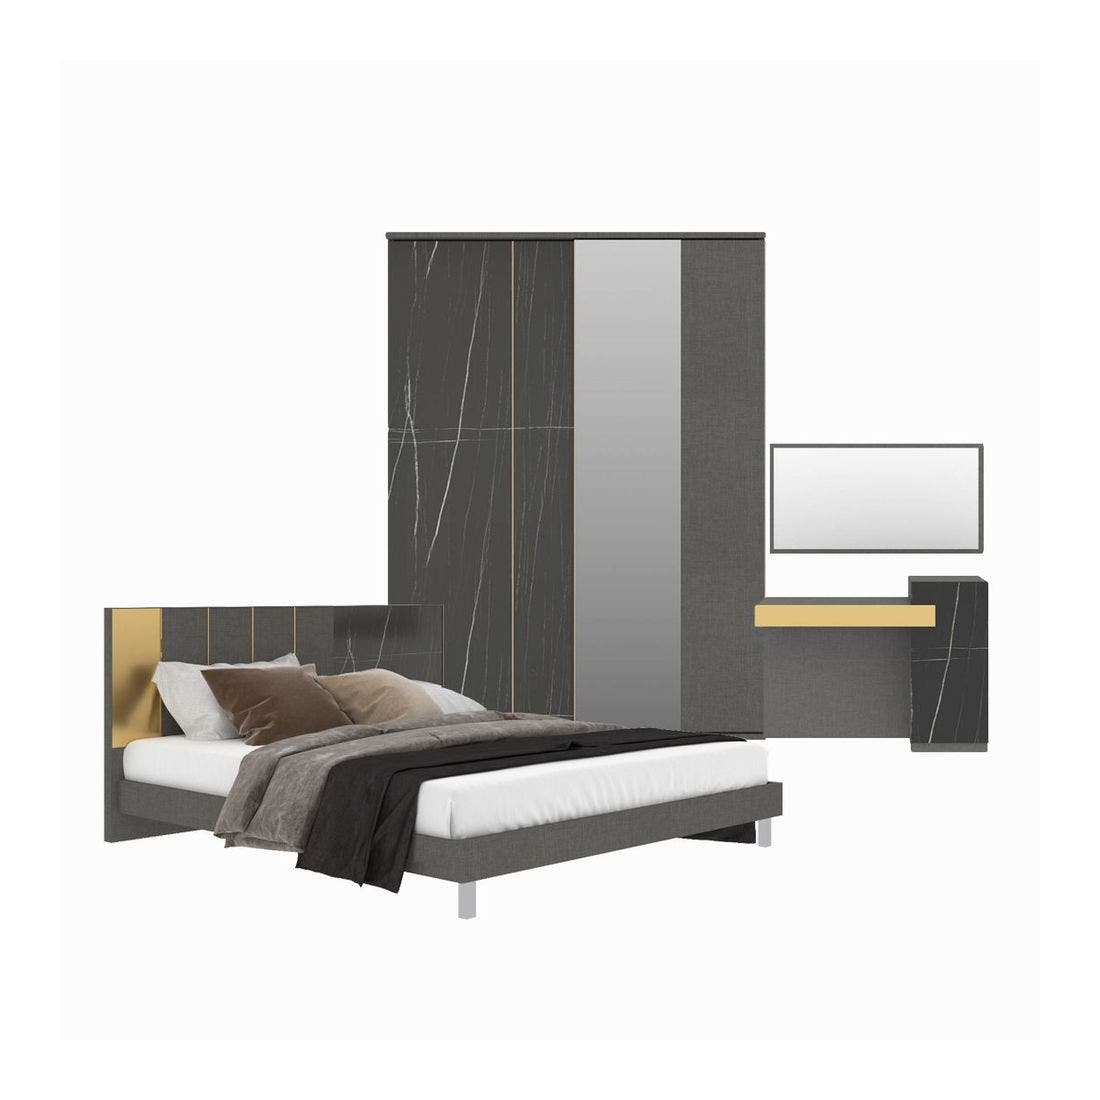 ชุดห้องนอน ชุดห้องนอนขนาด 5 ฟุต รุ่น Luxus สีสีเทา-SB Design Square